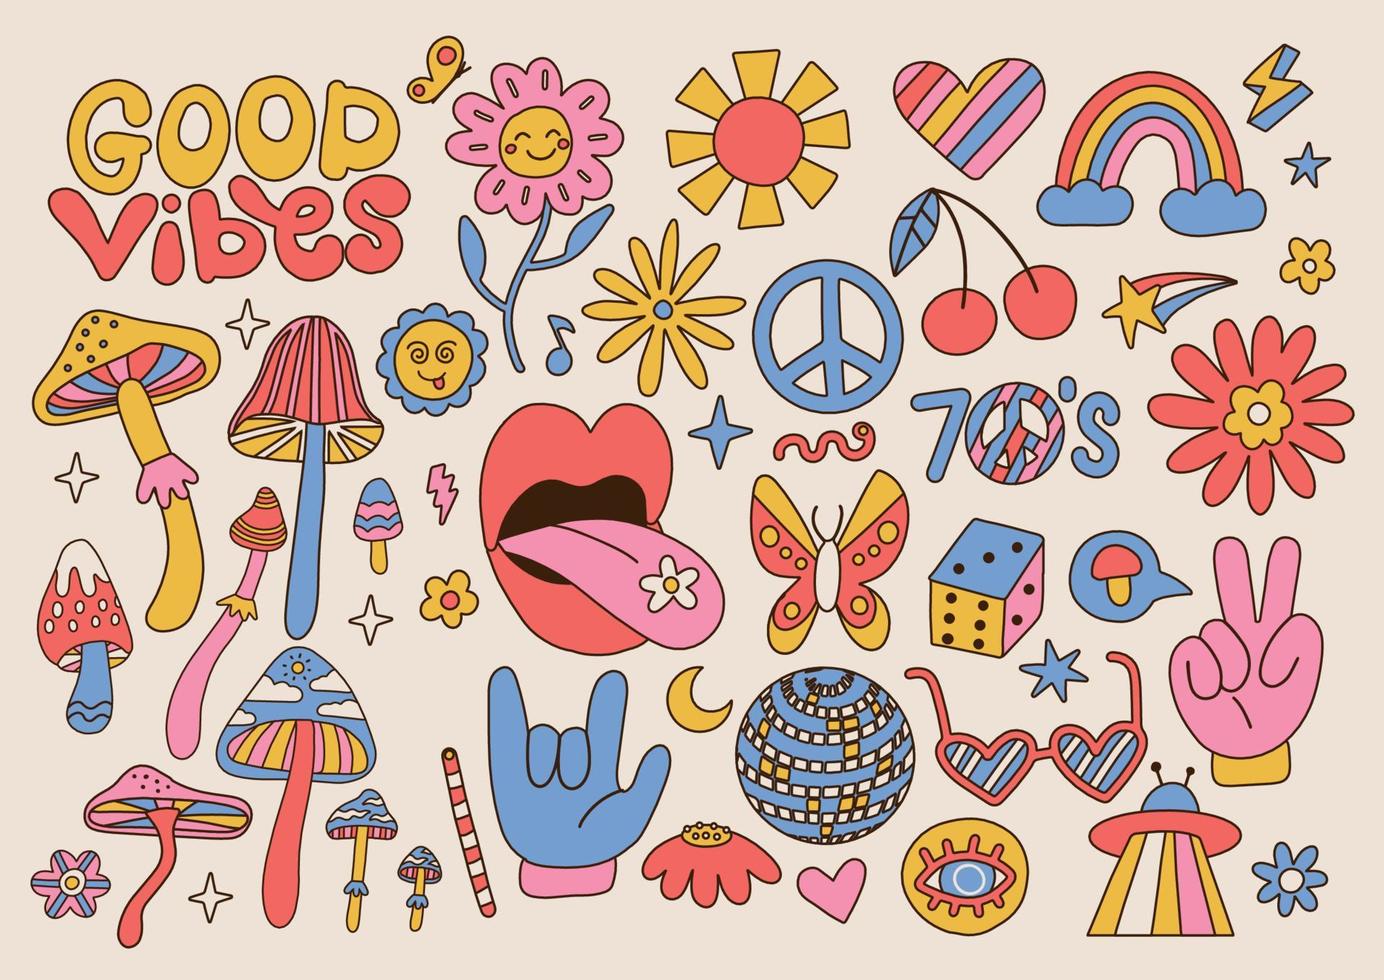 grote set retro jaren 70 groovy elementen, leuke funky hippie stickers. cartoon madeliefjebloemen, paddestoelen, vredesteken, lippen, regenboog, hippie-collectie. positieve hand getekende vector geïsoleerde symbolen.